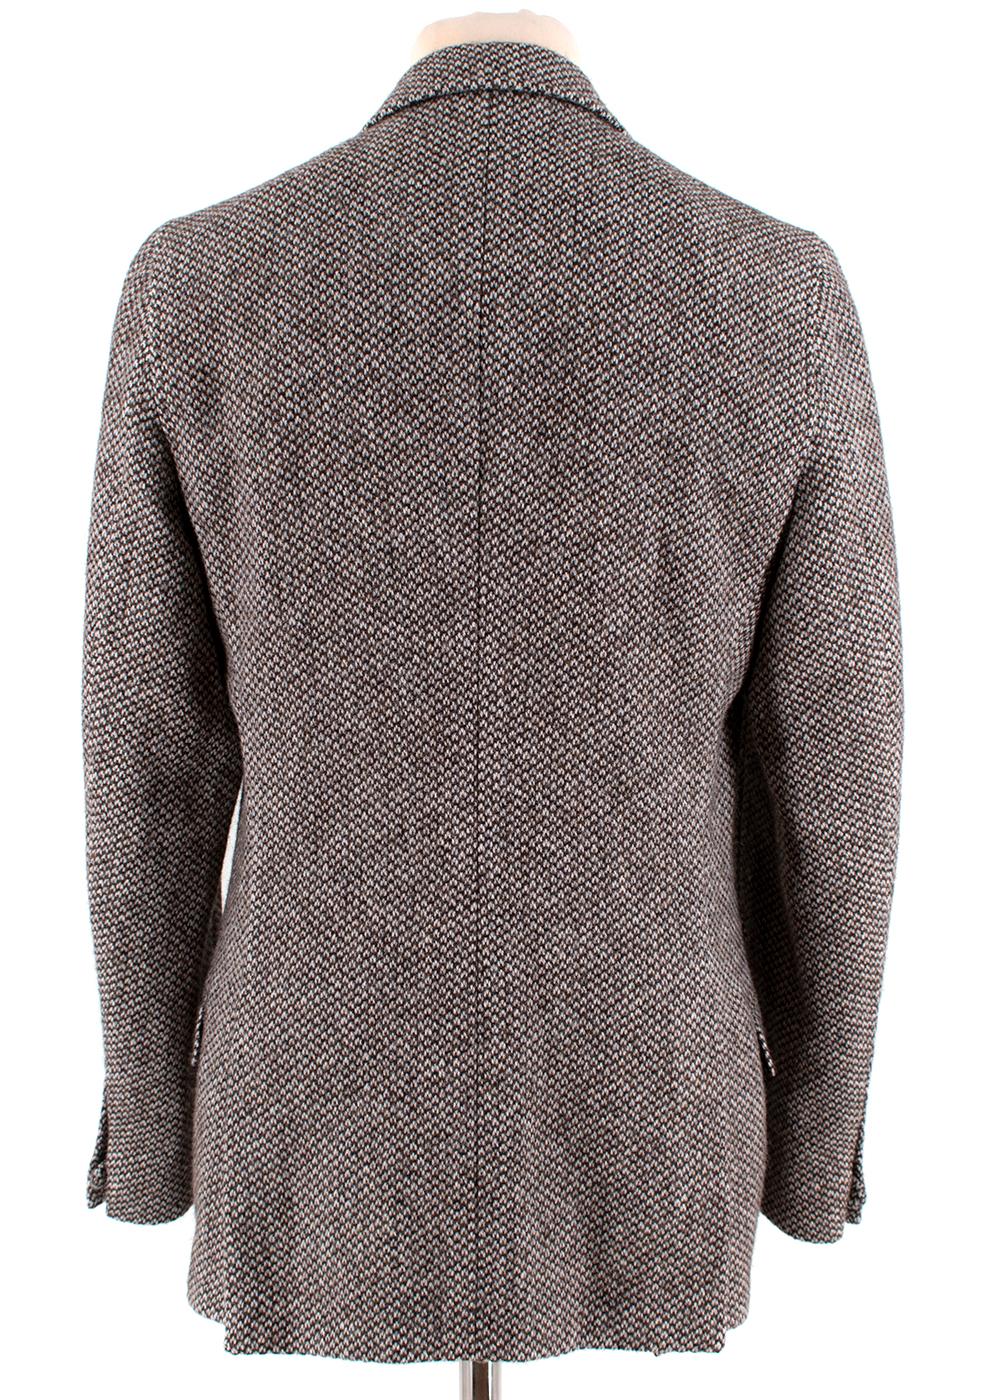 men's size 50r coats & jackets sale